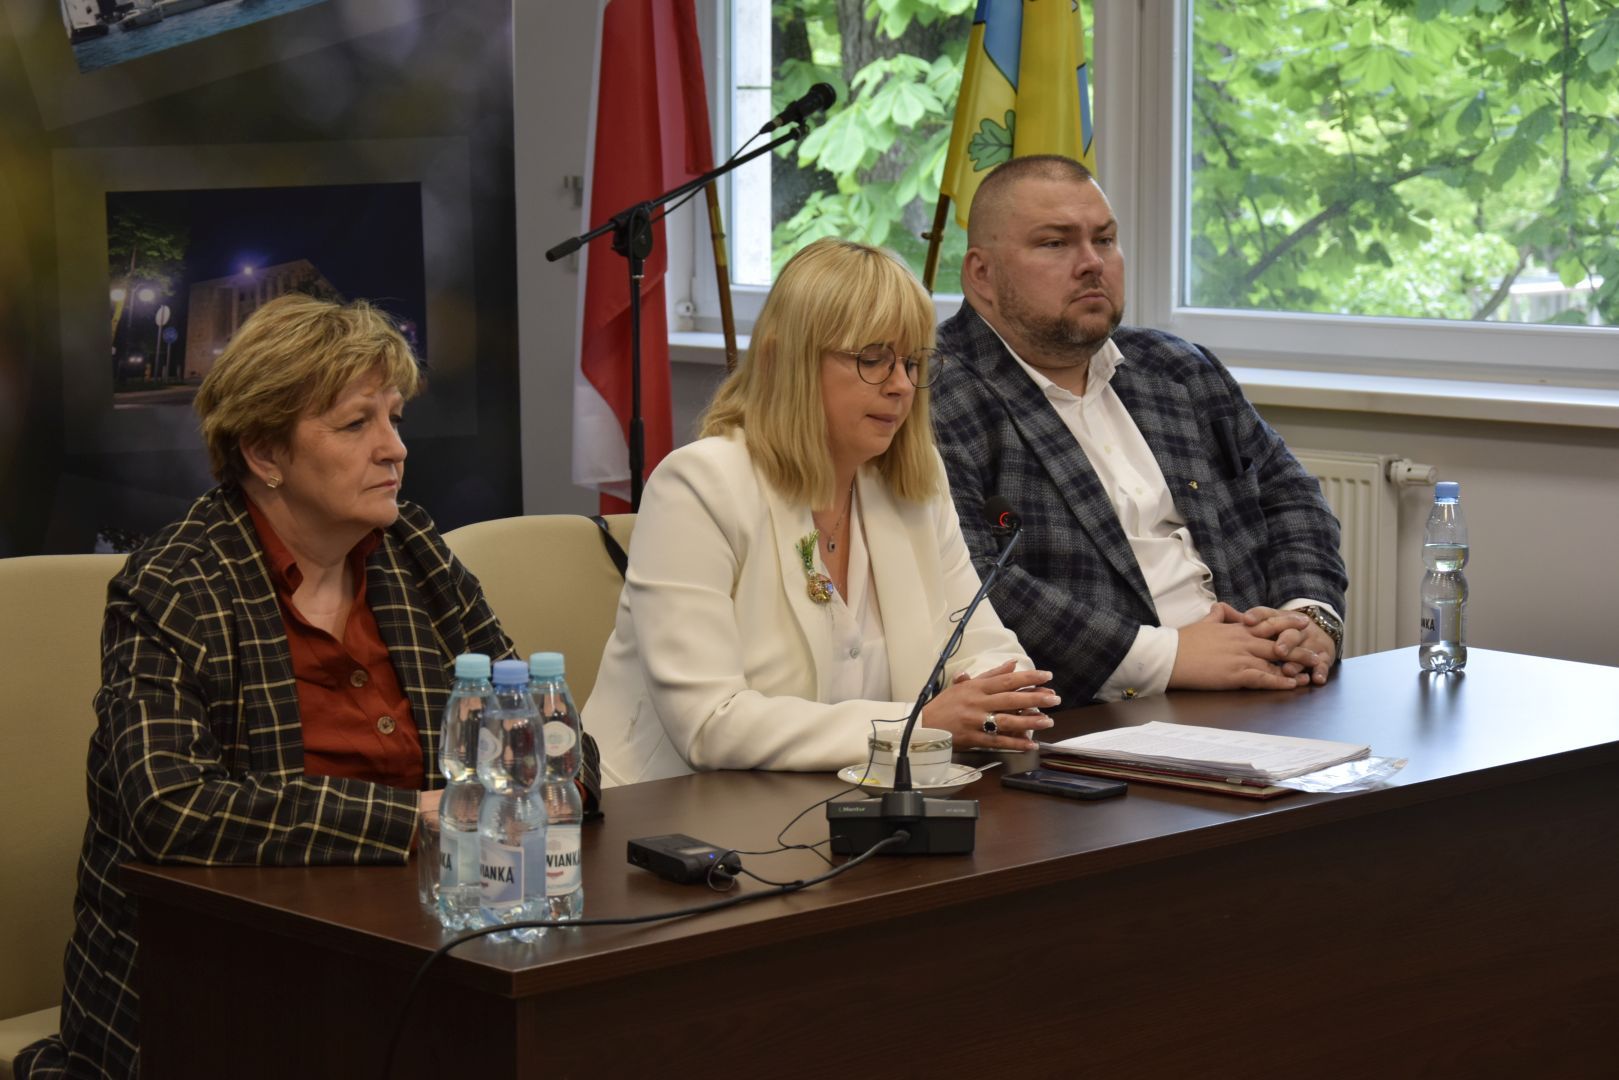 Na zdjęciu: uczestnicy spotkania z Wojewódzkim Lekarzem Weterynarii, które odbyło się 18 maja 2023 roku w sali konferencyjnej Starostwa Powiatowego w Tomaszowie Mazowieckim